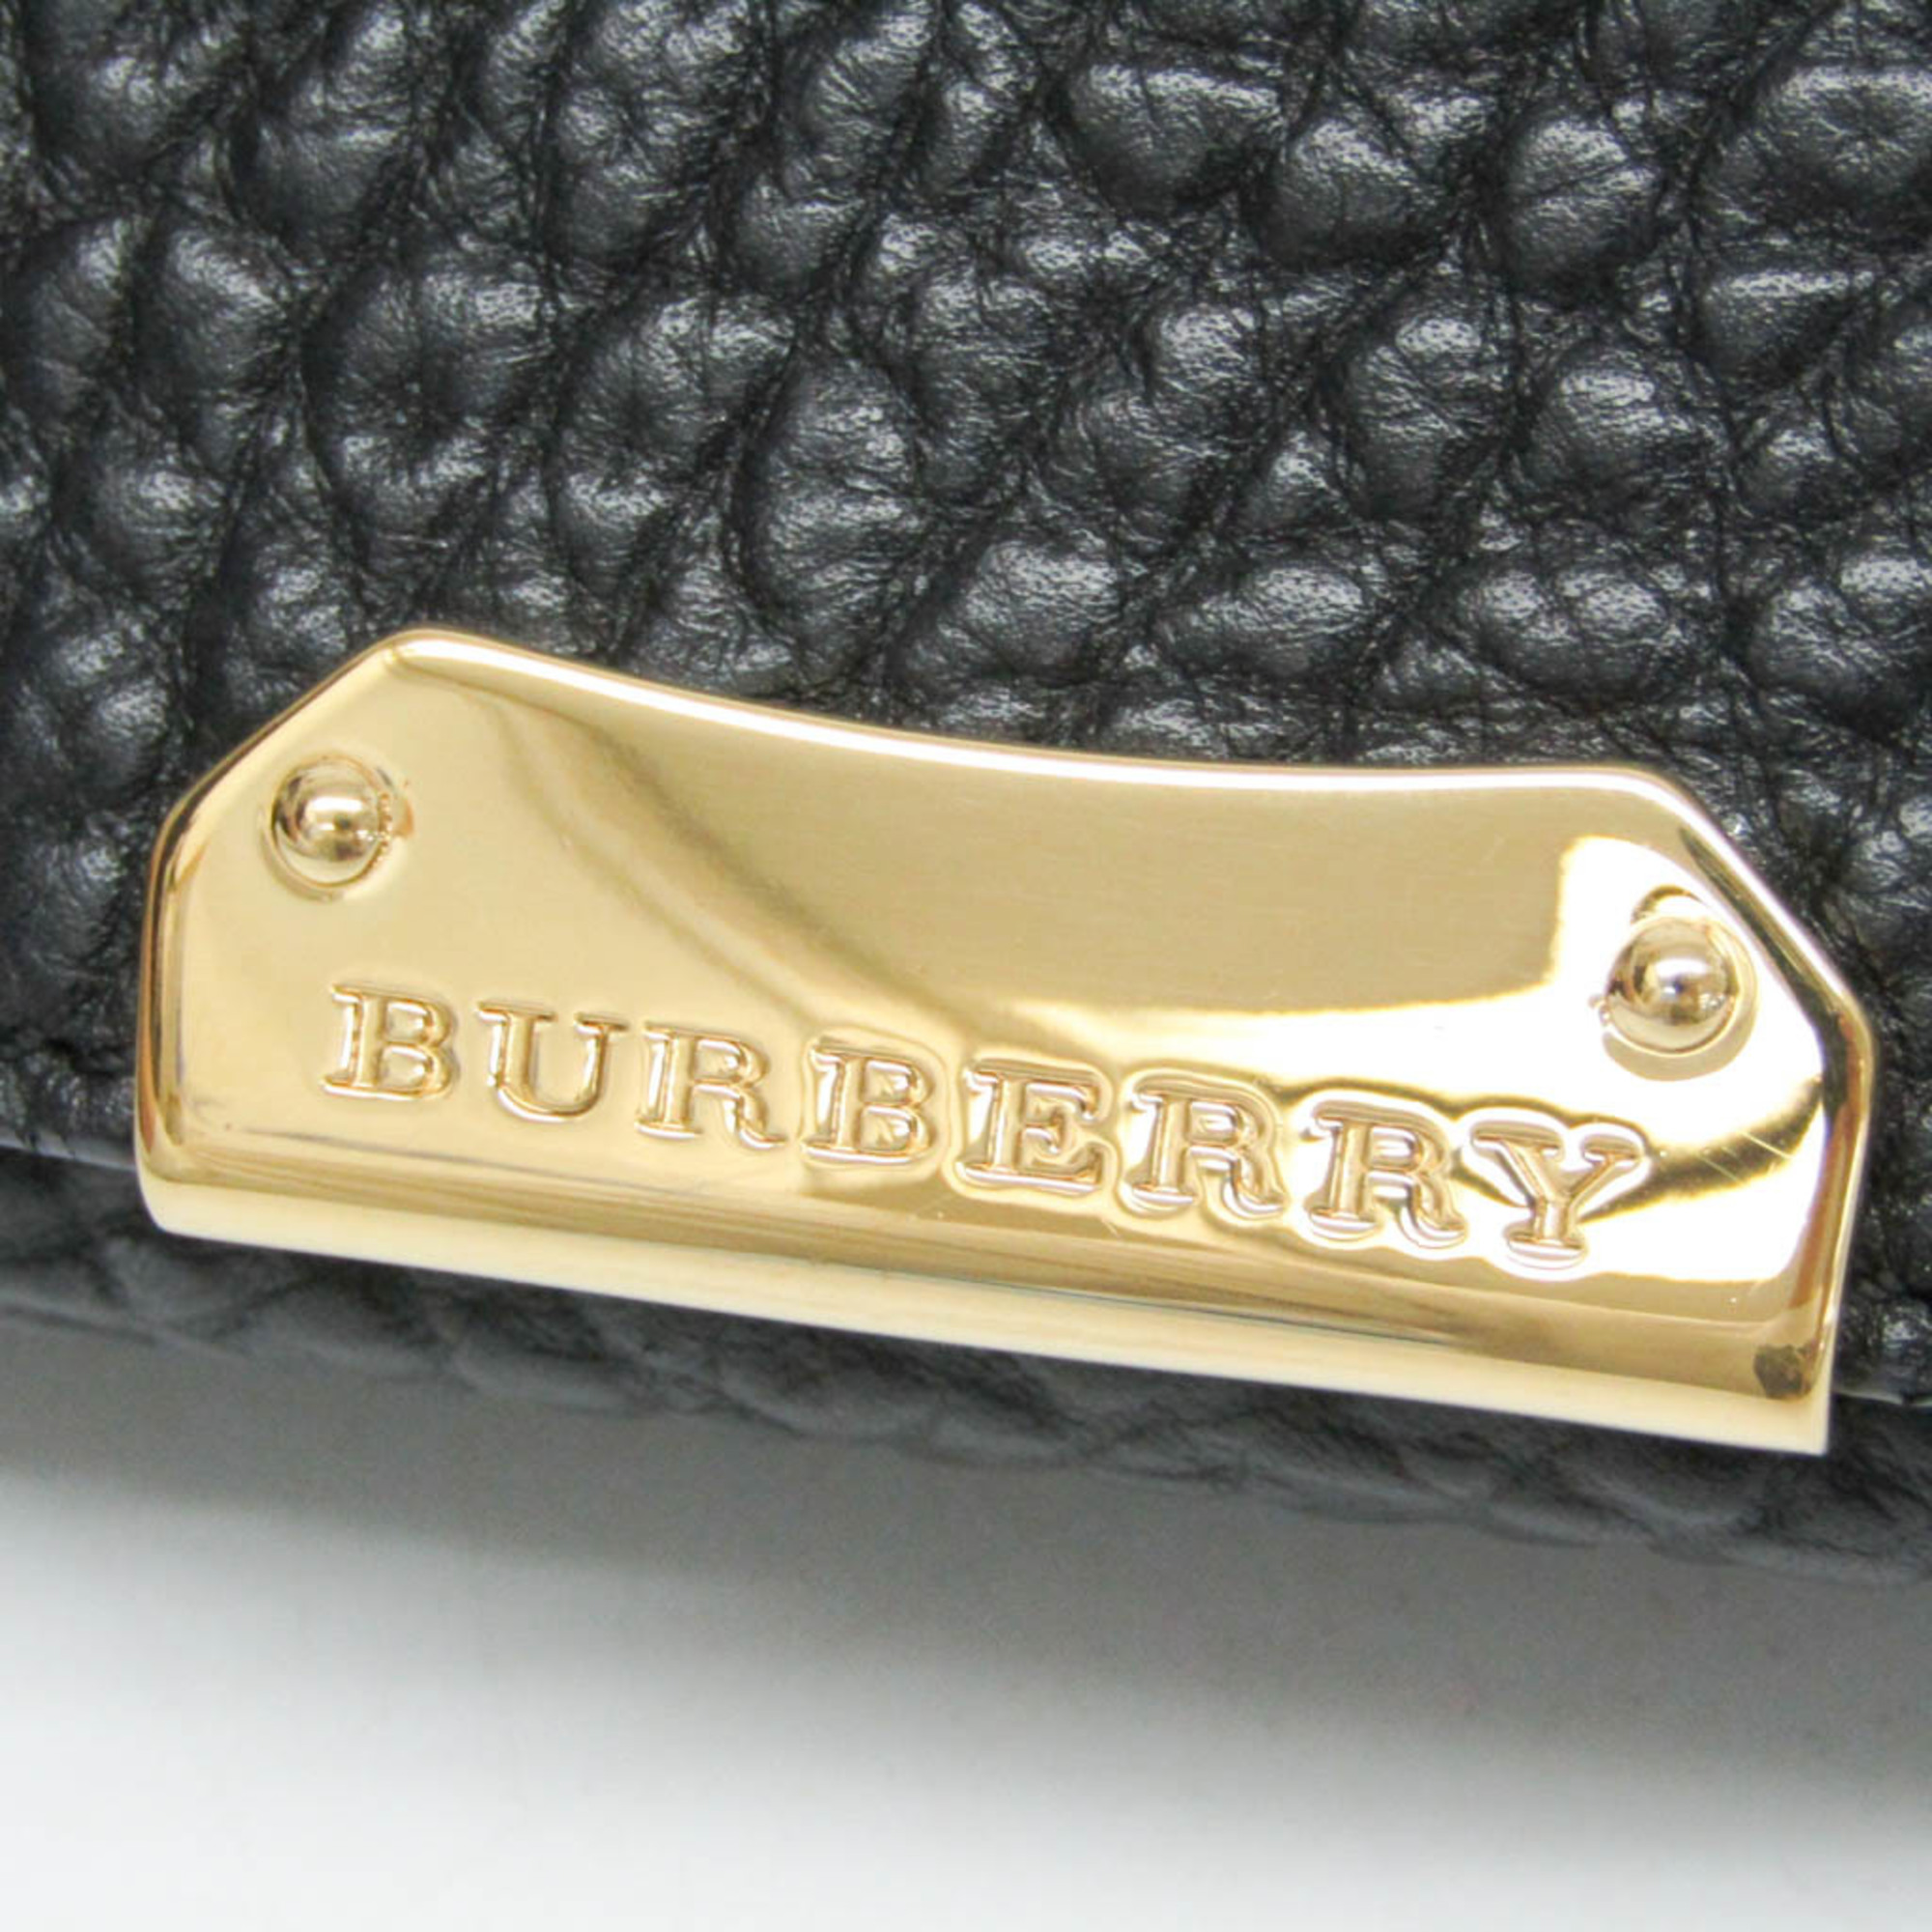 バーバリー(Burberry) 3904112 レディース レザー ショルダーバッグ ブラック